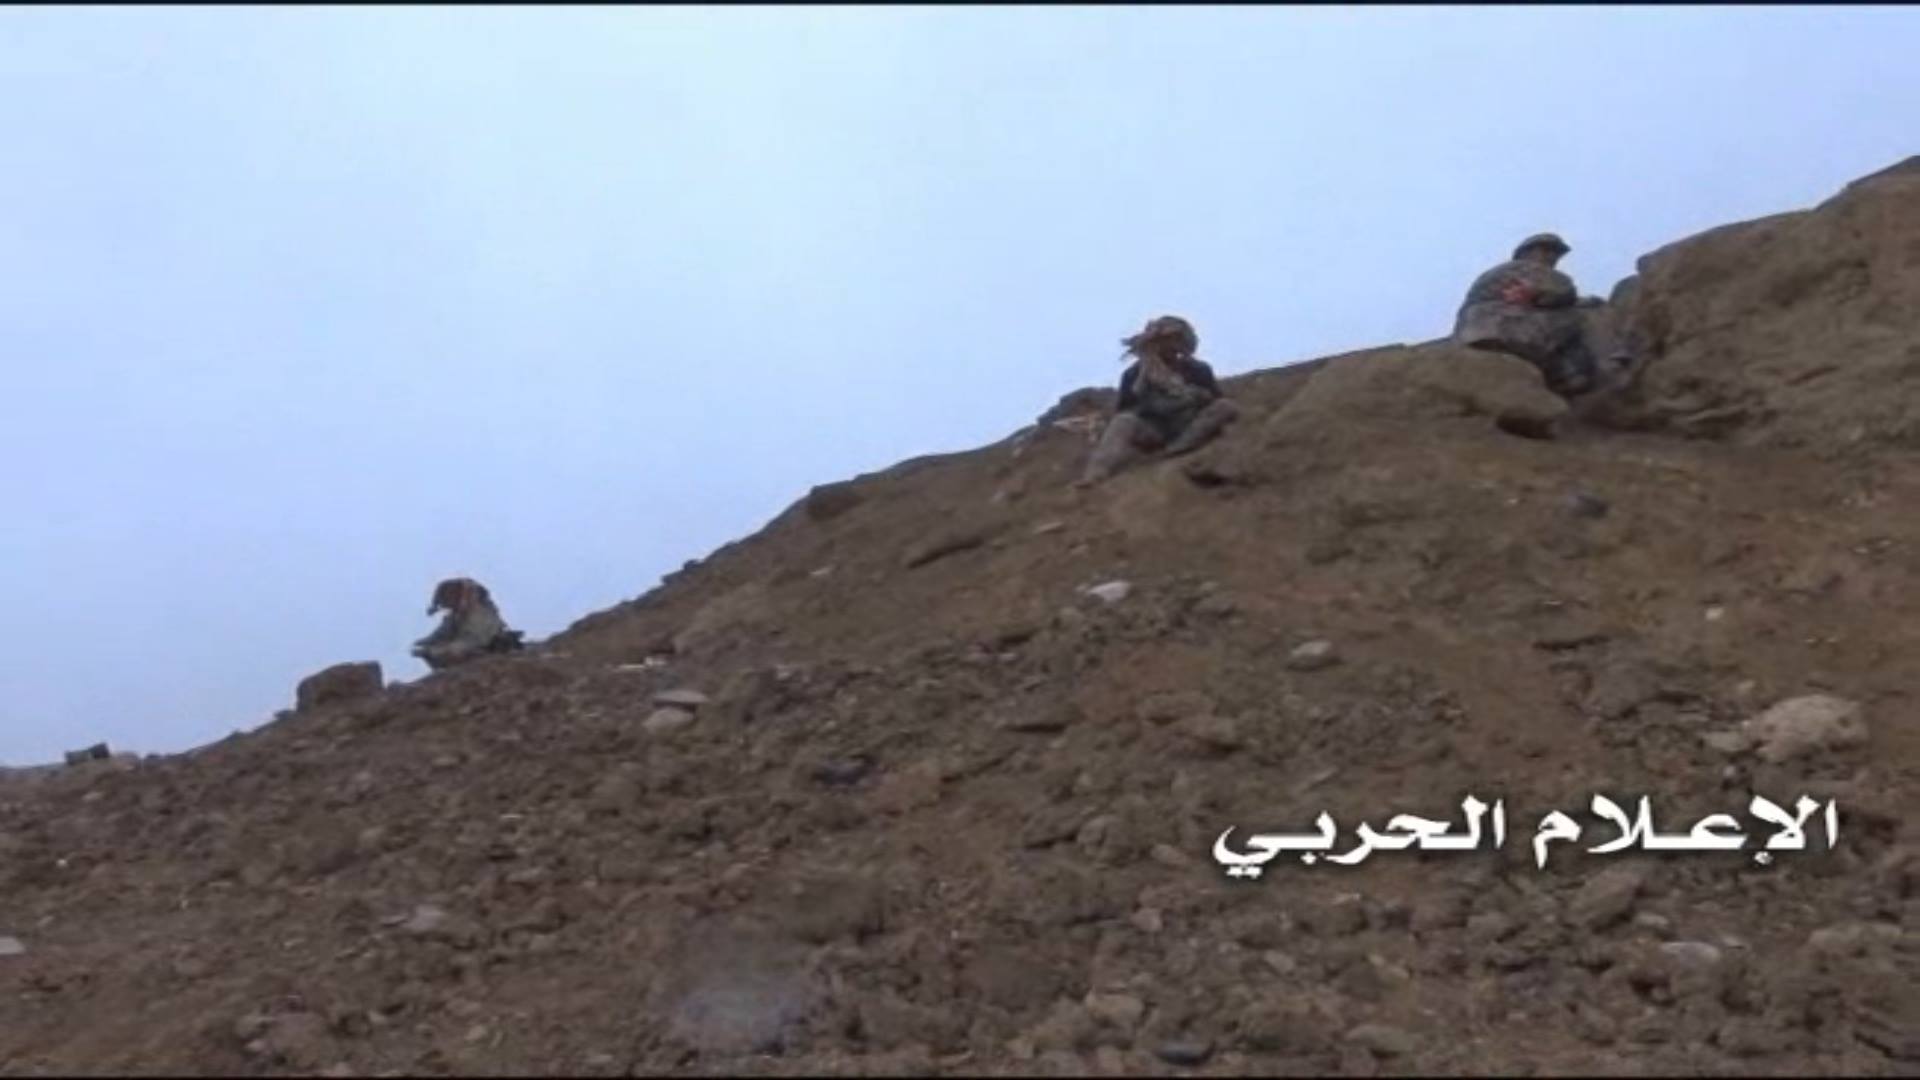 قتلى وجرحى من الحوثيين في اشتباكات «بينية» وقصف للطيران في مأرب (تفاصيل)